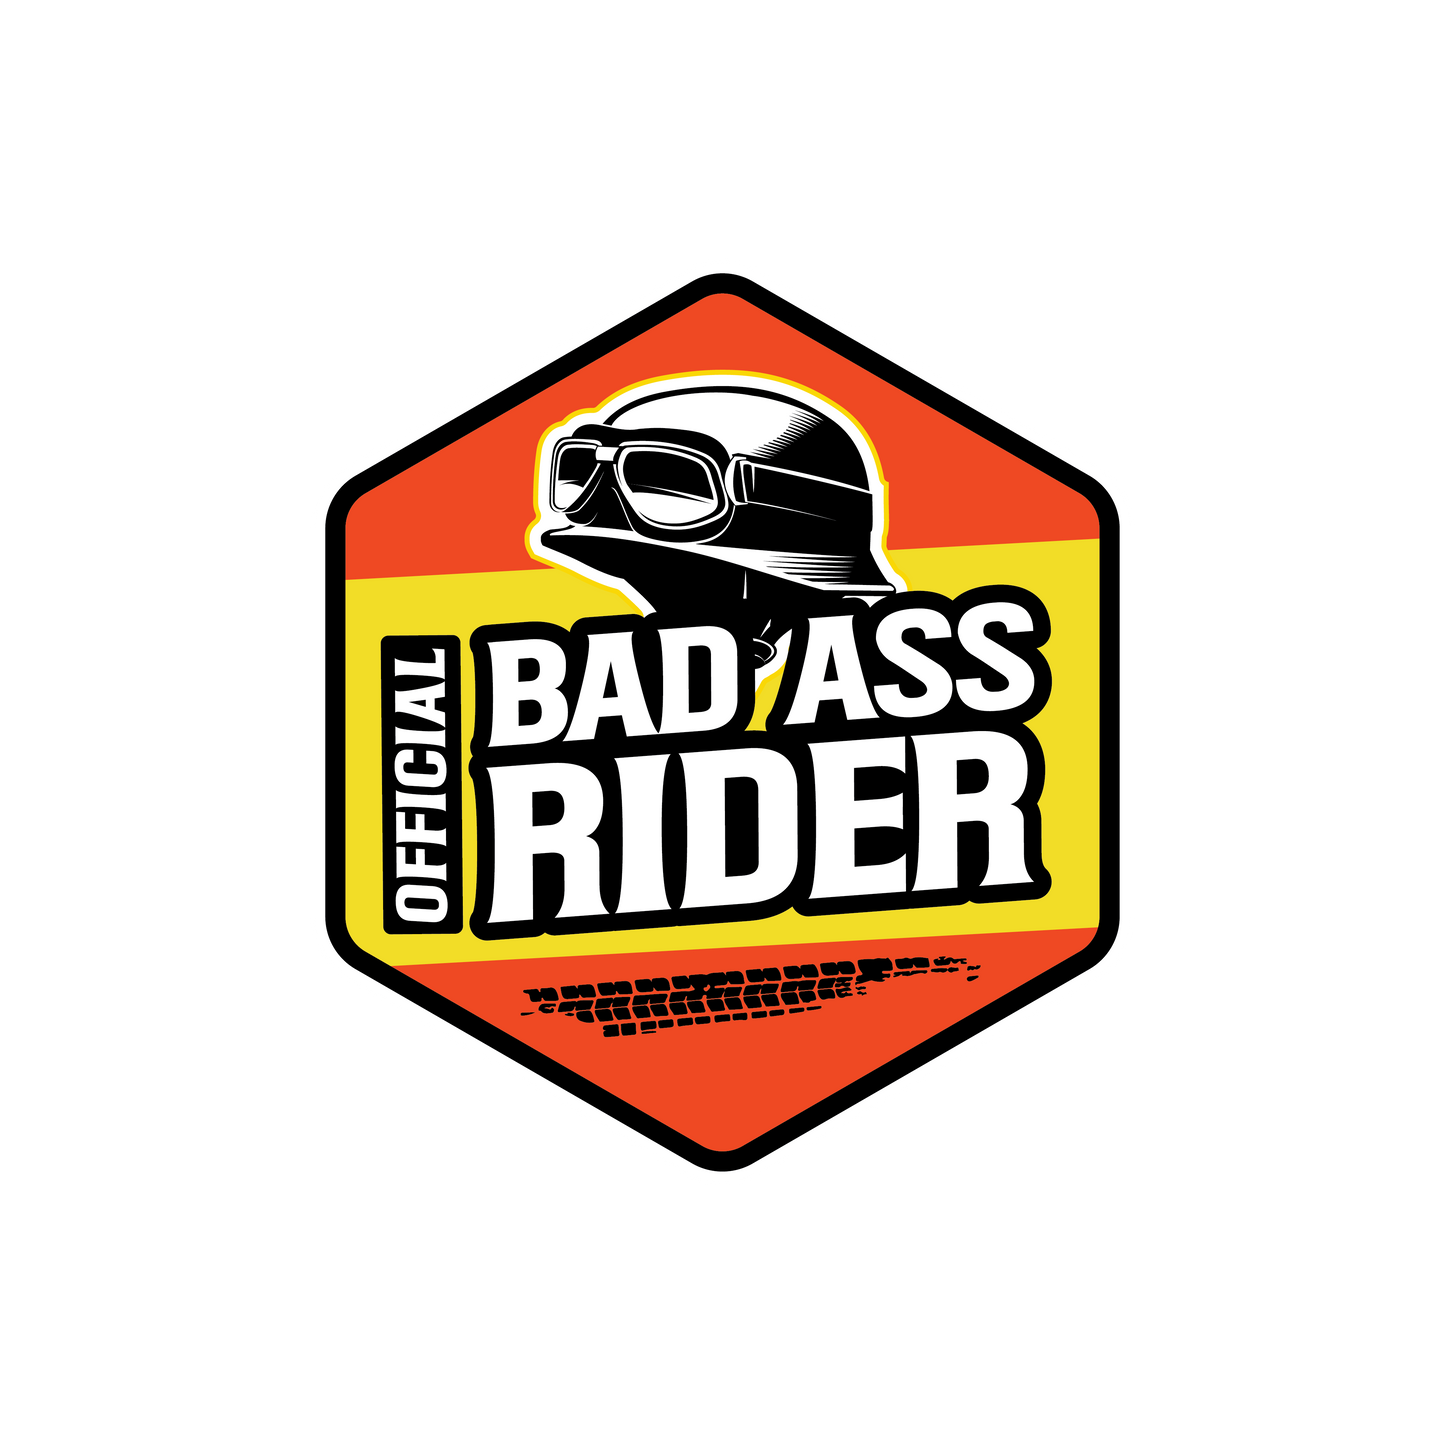 Official Badass Rider